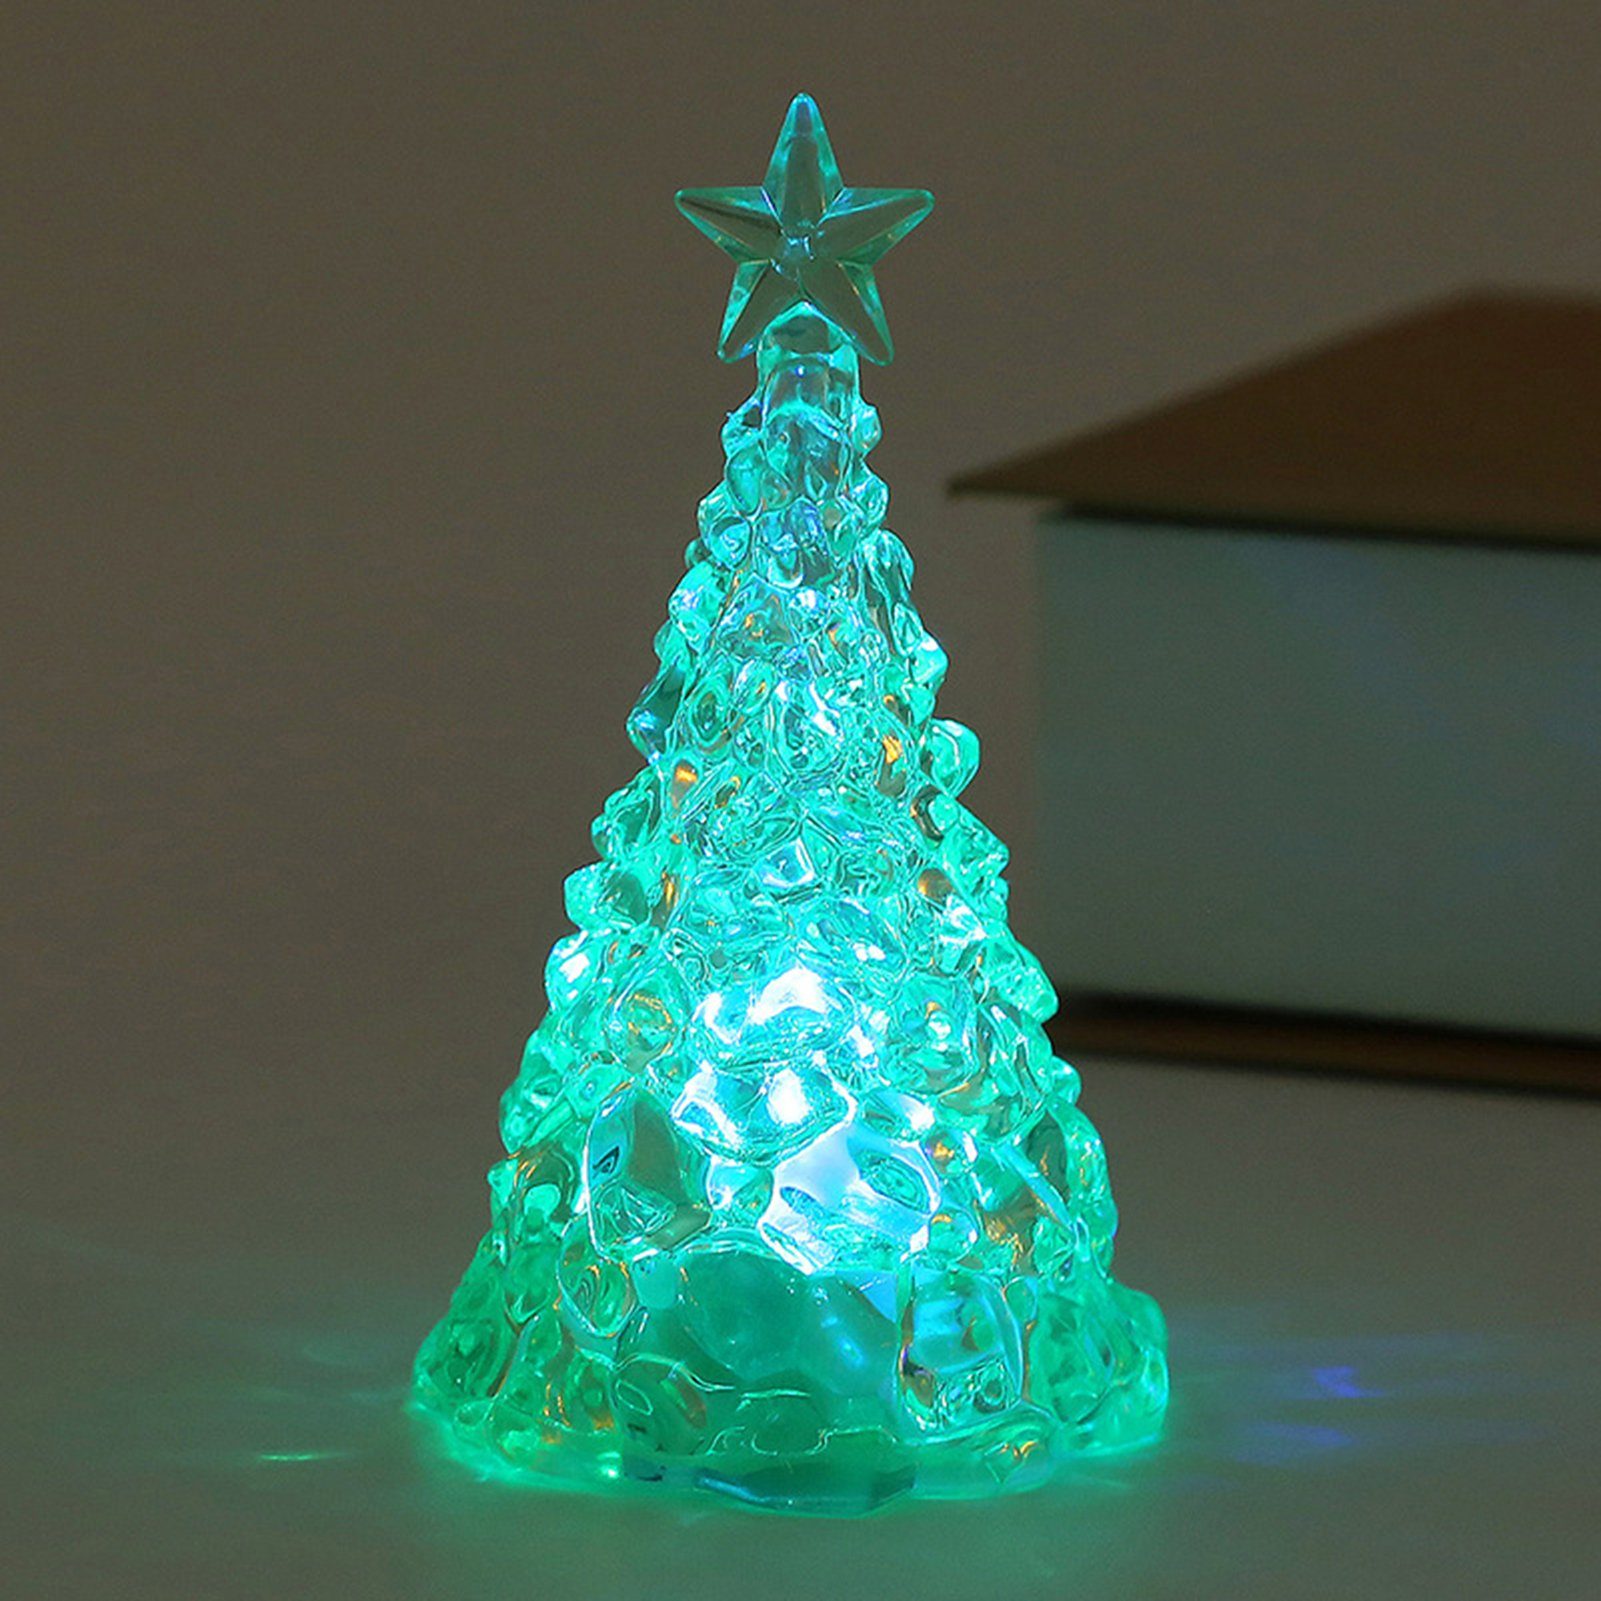 Rutaqian LED Nachtlicht 4 Stück Weihnachtsbaum Nachtlicht Heiligabend Geschenk LED Kerzenlicht, Weihnachtsdekorationen Desktop Ornament Kristall Nachtlicht Grün | Nachtlichter